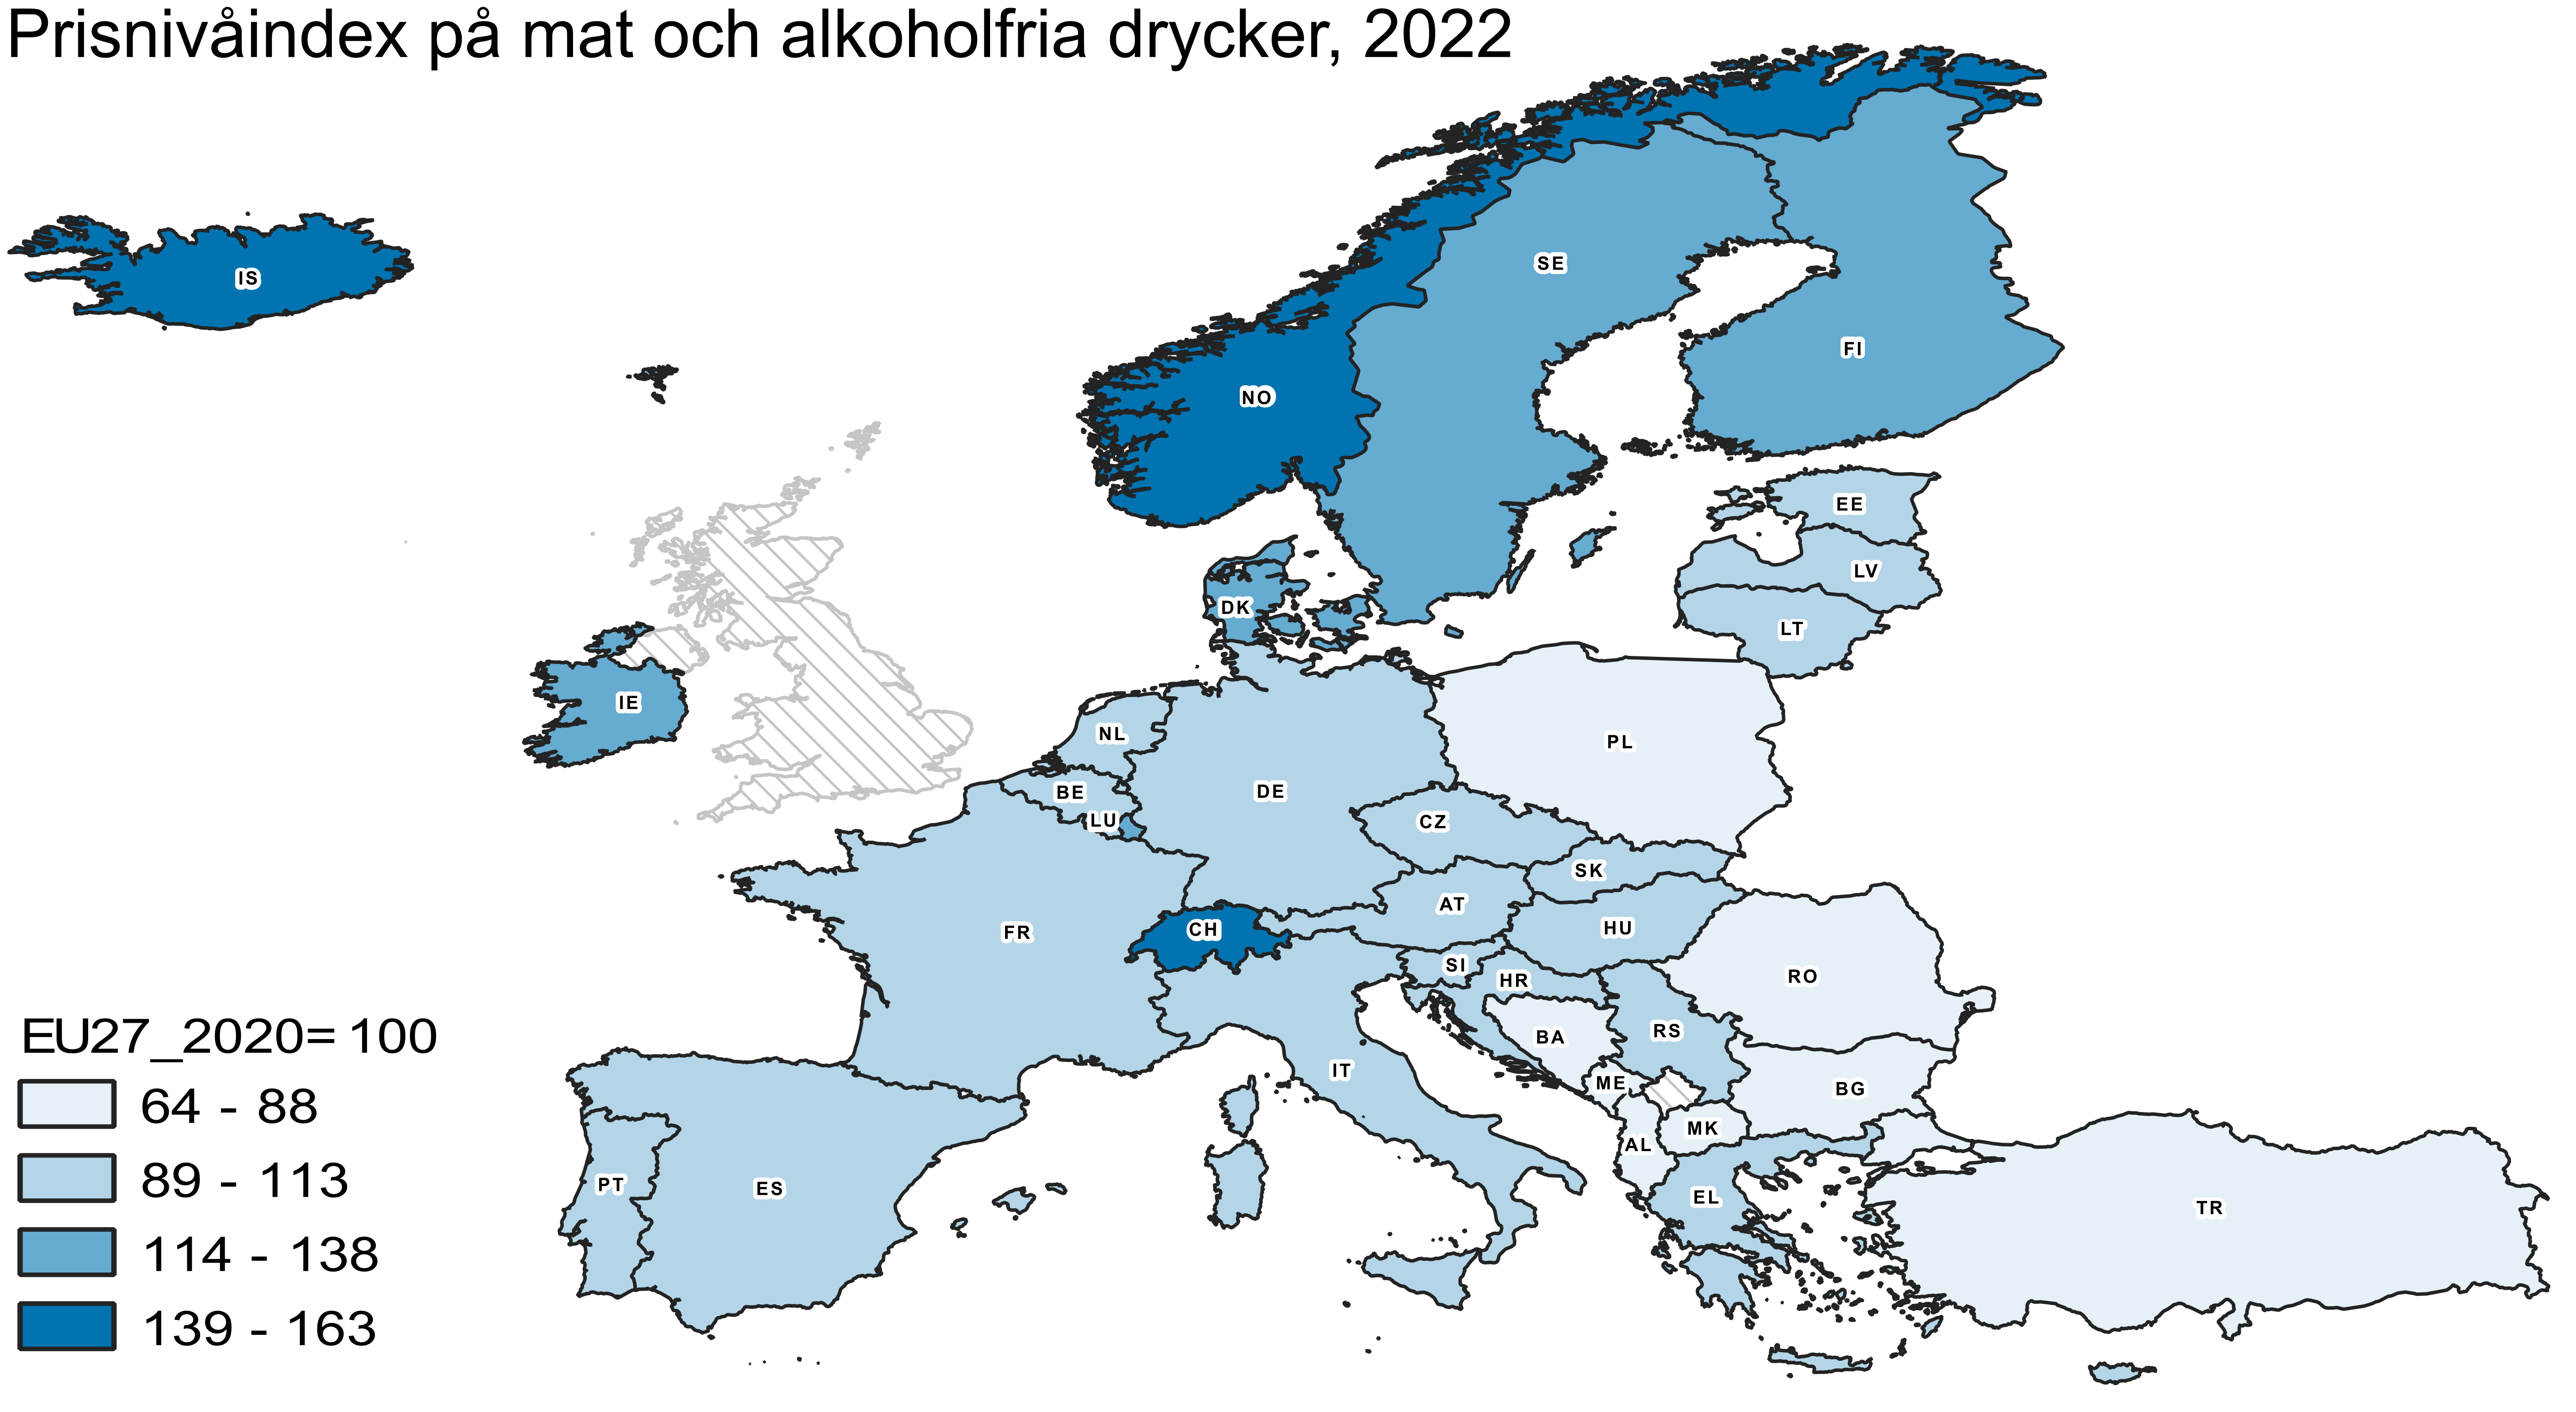 Kartan beskriver prisnivåskillnaderna i fråga om mat och alkoholfria drycker i de europeiska länderna år 2022.  Mat och alkoholfria drycker var dyrast i EFTA-länderna Schweiz, Norge och Island. Prisnivån översteg där EU-genomsnittet med 40–60 procent. Förmånligast var maten i Turkiet och Nordmakedonien, där prisnivån var under 70 procent av EU-genomsnittet. Prisnivåerna på livsmedel i EU-länderna ligger mellan dessa två grupper.